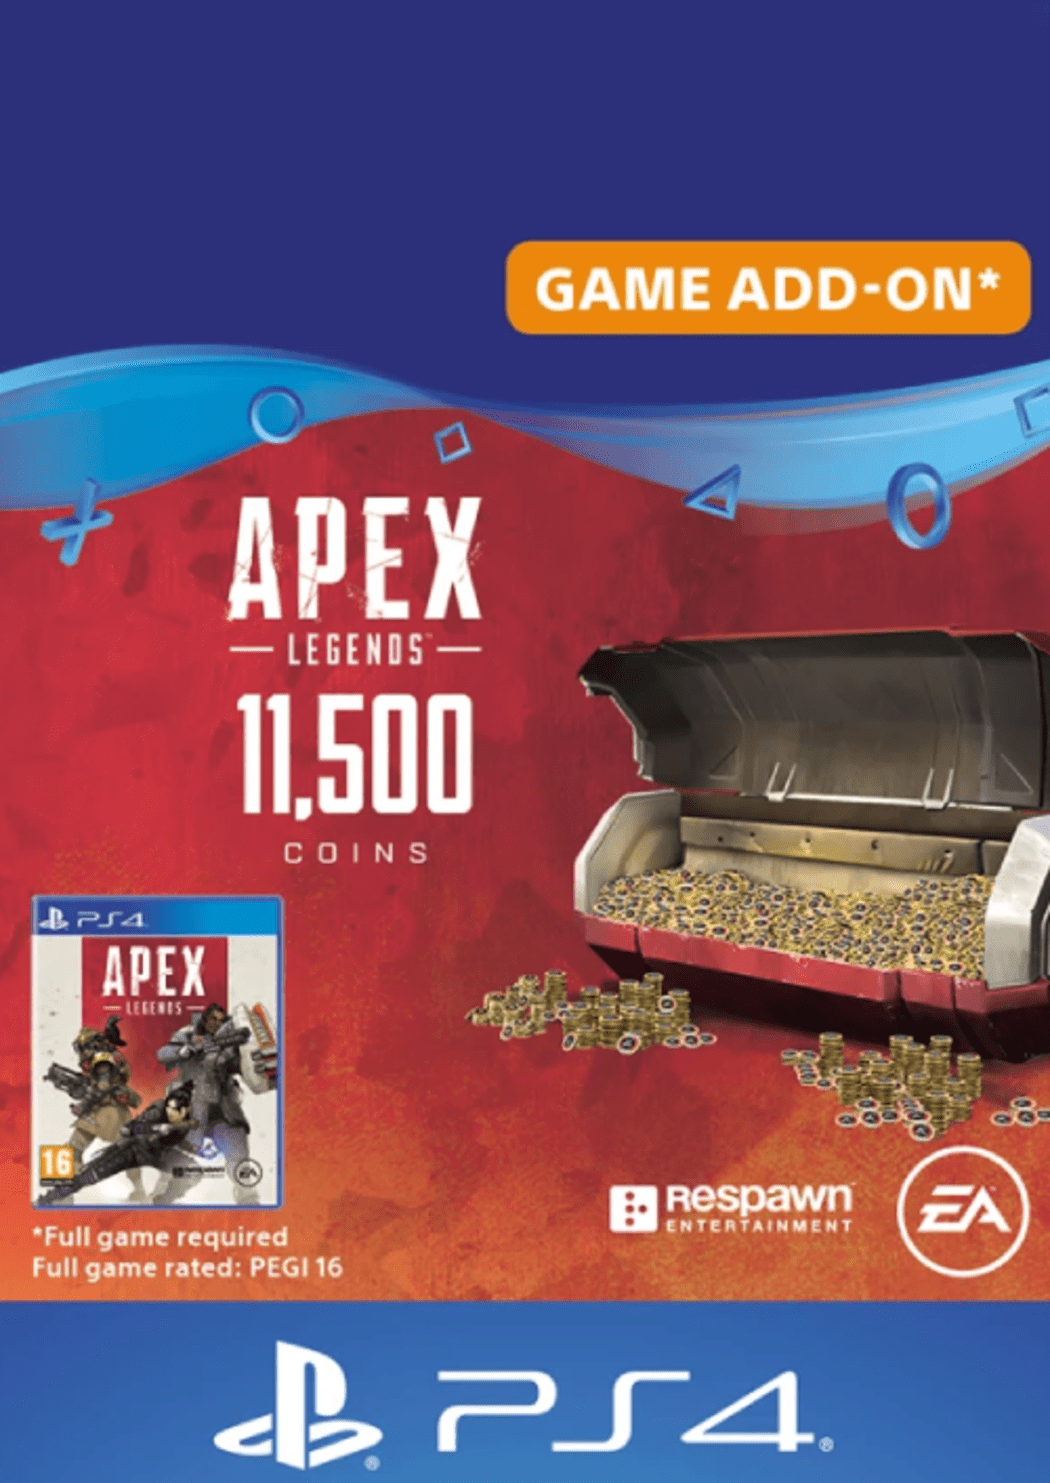 Compre Apex Legends Bloodhound Edition PS4 e Ganhe 1000 Moedas